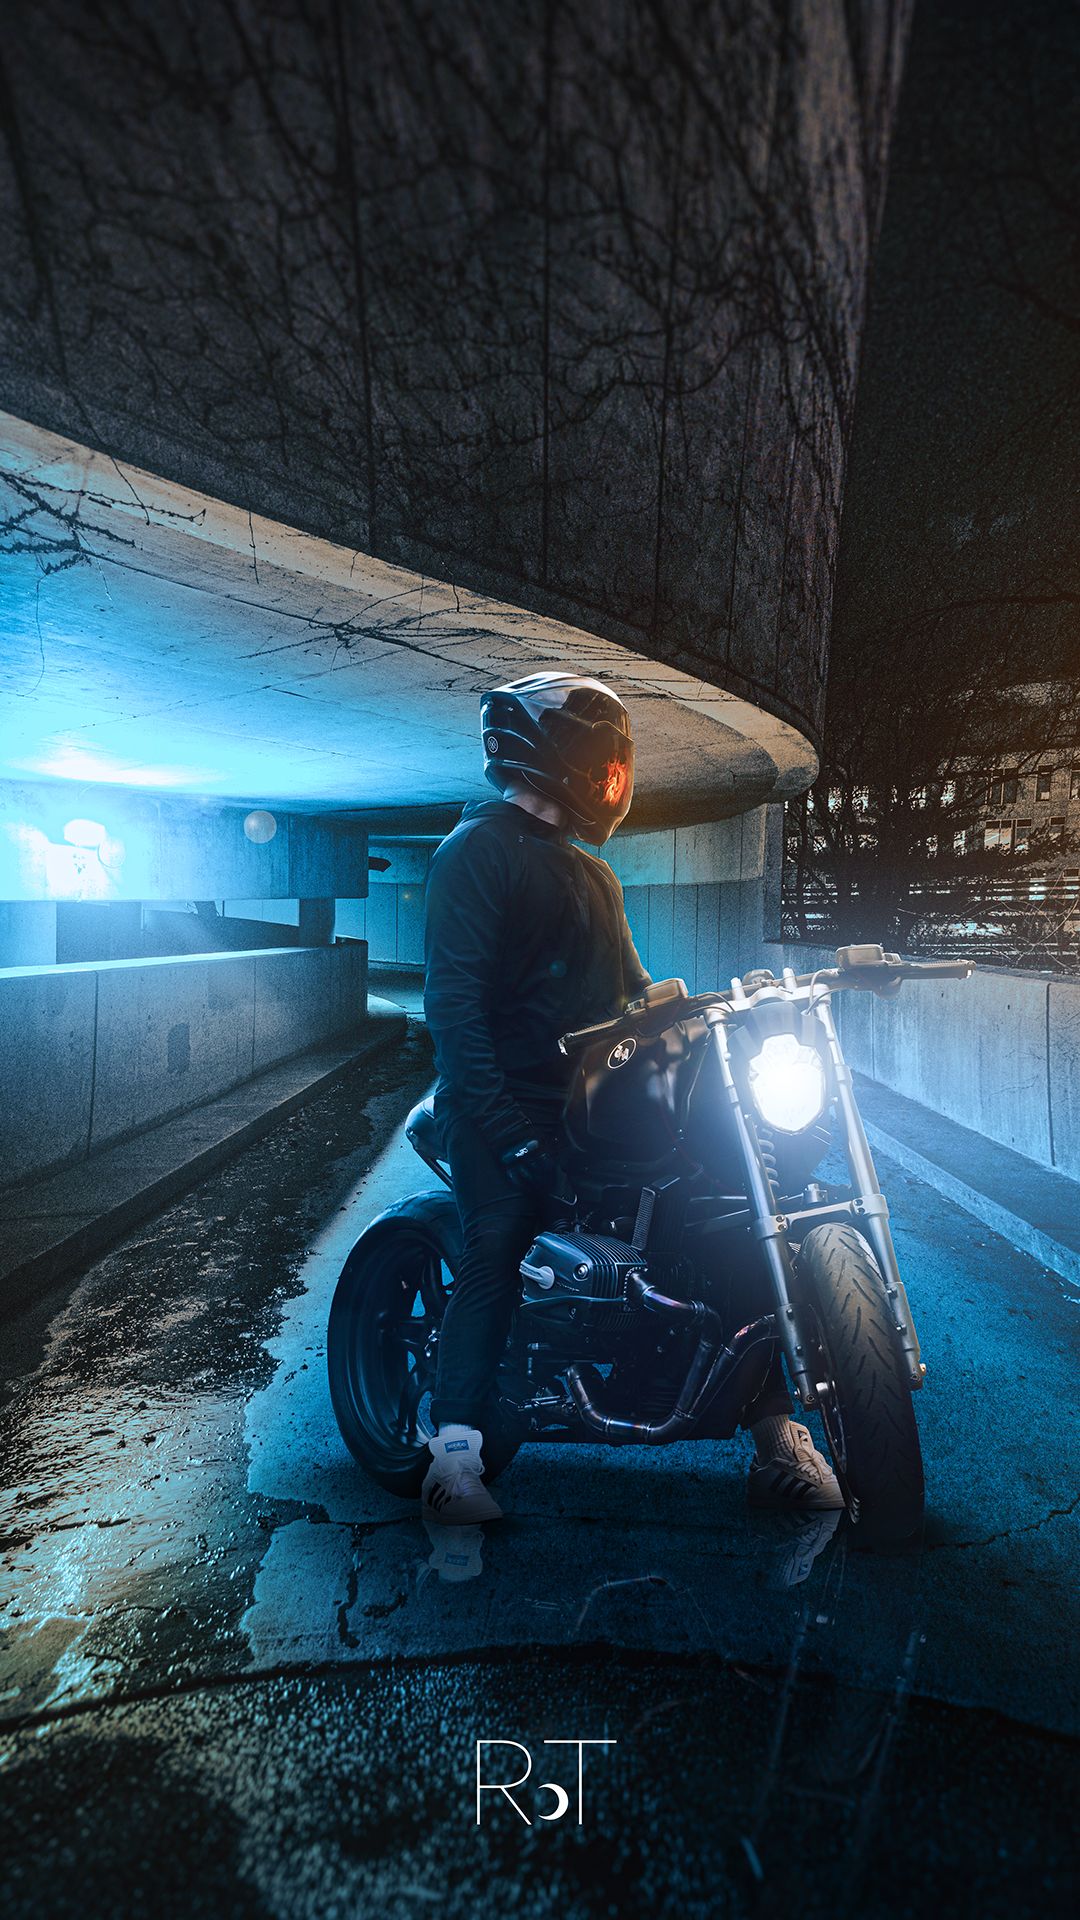 Descarga gratuita de fondo de pantalla para móvil de Noche, Motocicletas, Motocicleta, Vehículos.